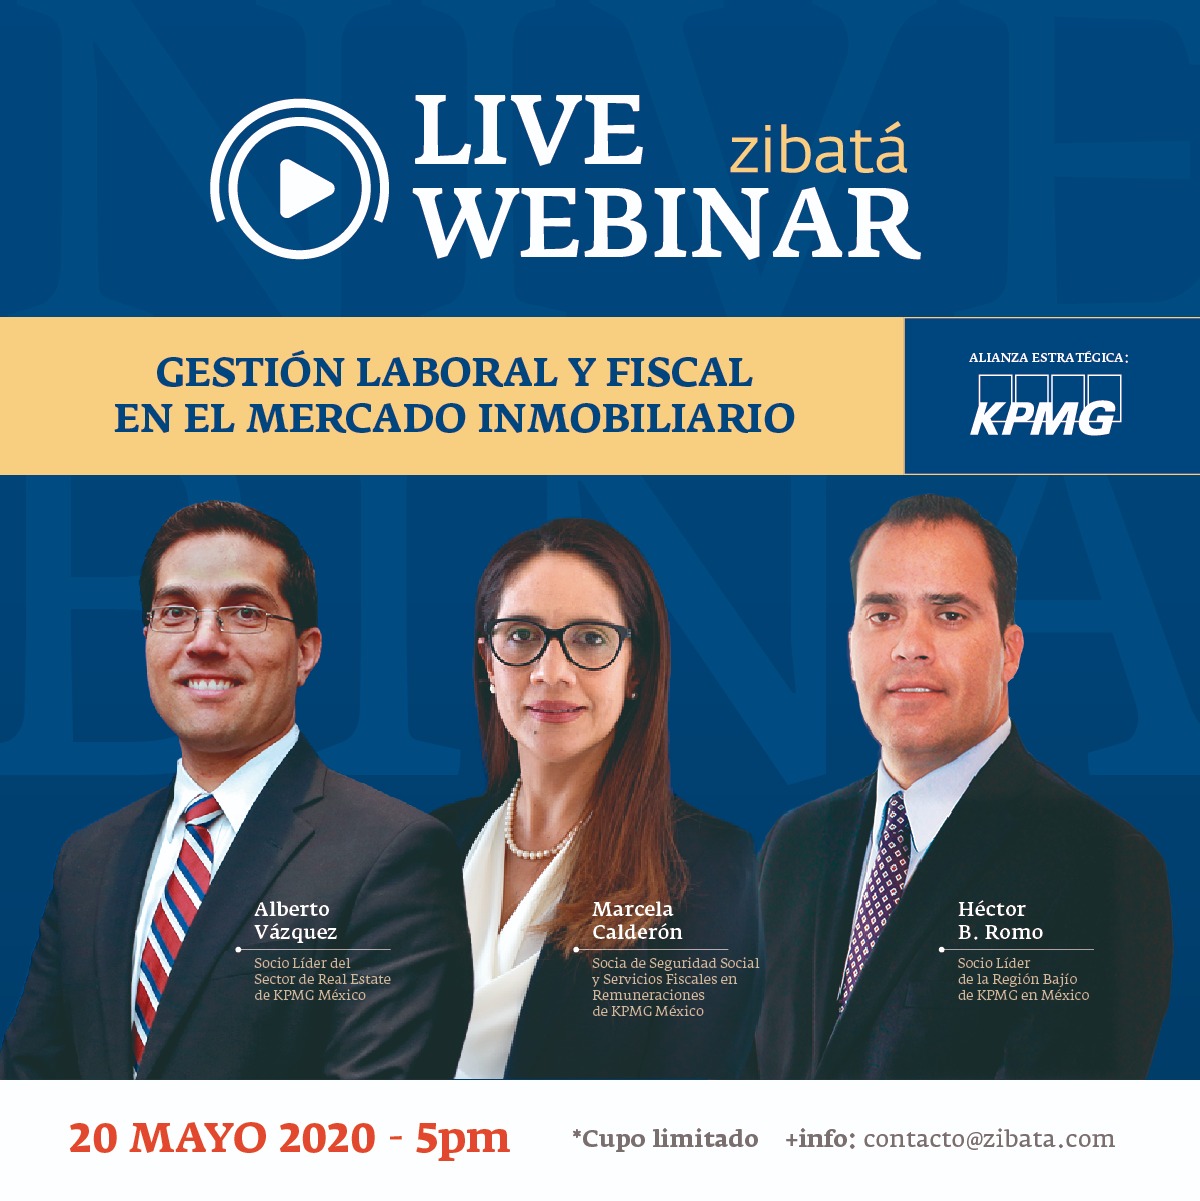 Live Webinar Zibatá – Gestión Laboral y Fiscal en el Mercado Inmobiliario